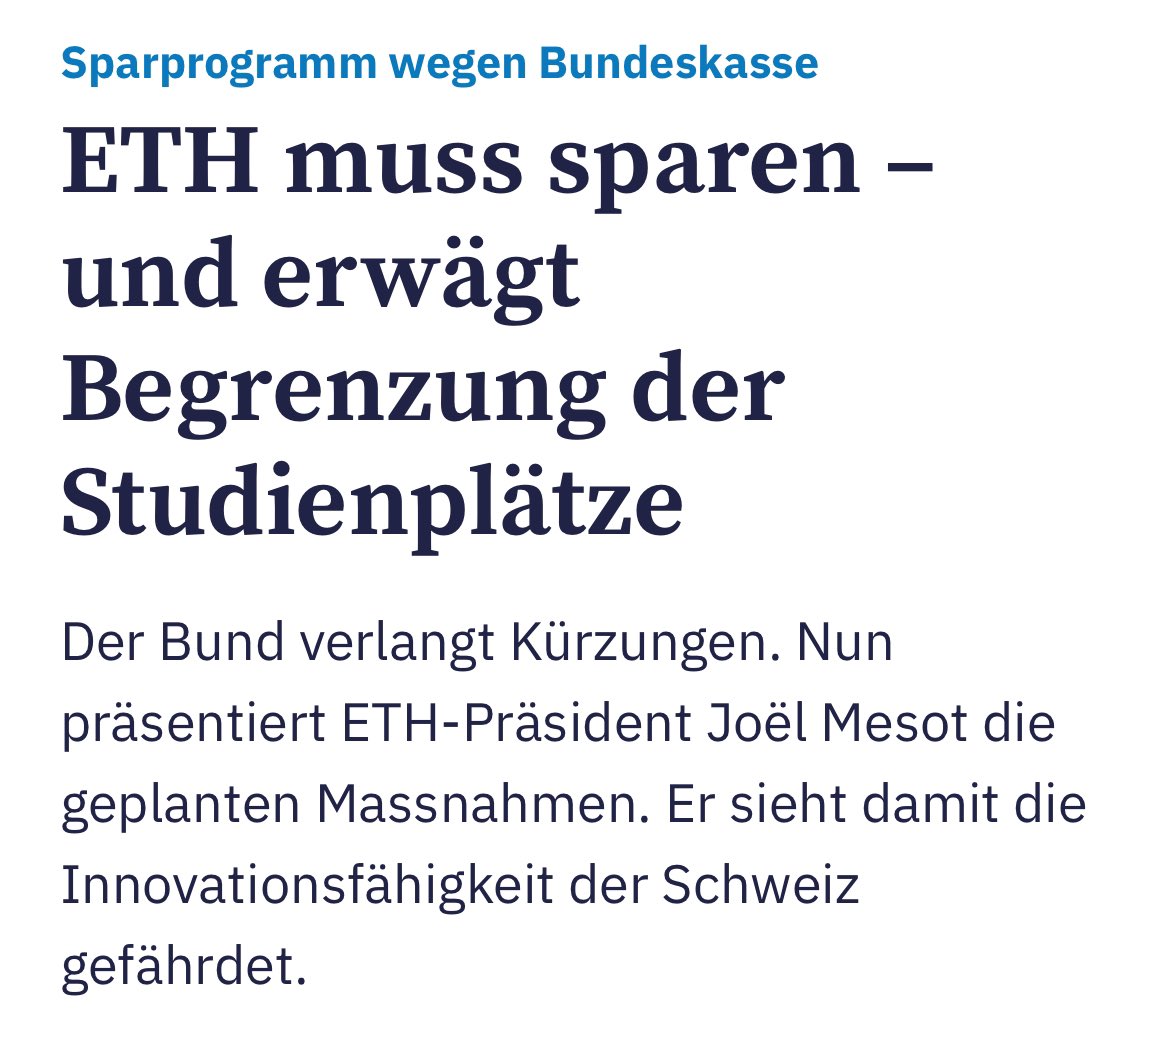 Die @ETH sollte als erstes die Studiengebühren für ausländische Studierende erhöhen. Es darf nicht sein, dass die Schweizer Steuerzahler jeden Studienplatz für Ausländer mit tausenden Franken subventionieren. Dies führt automatisch zu einem Rückgang der Studierendenzahlen.